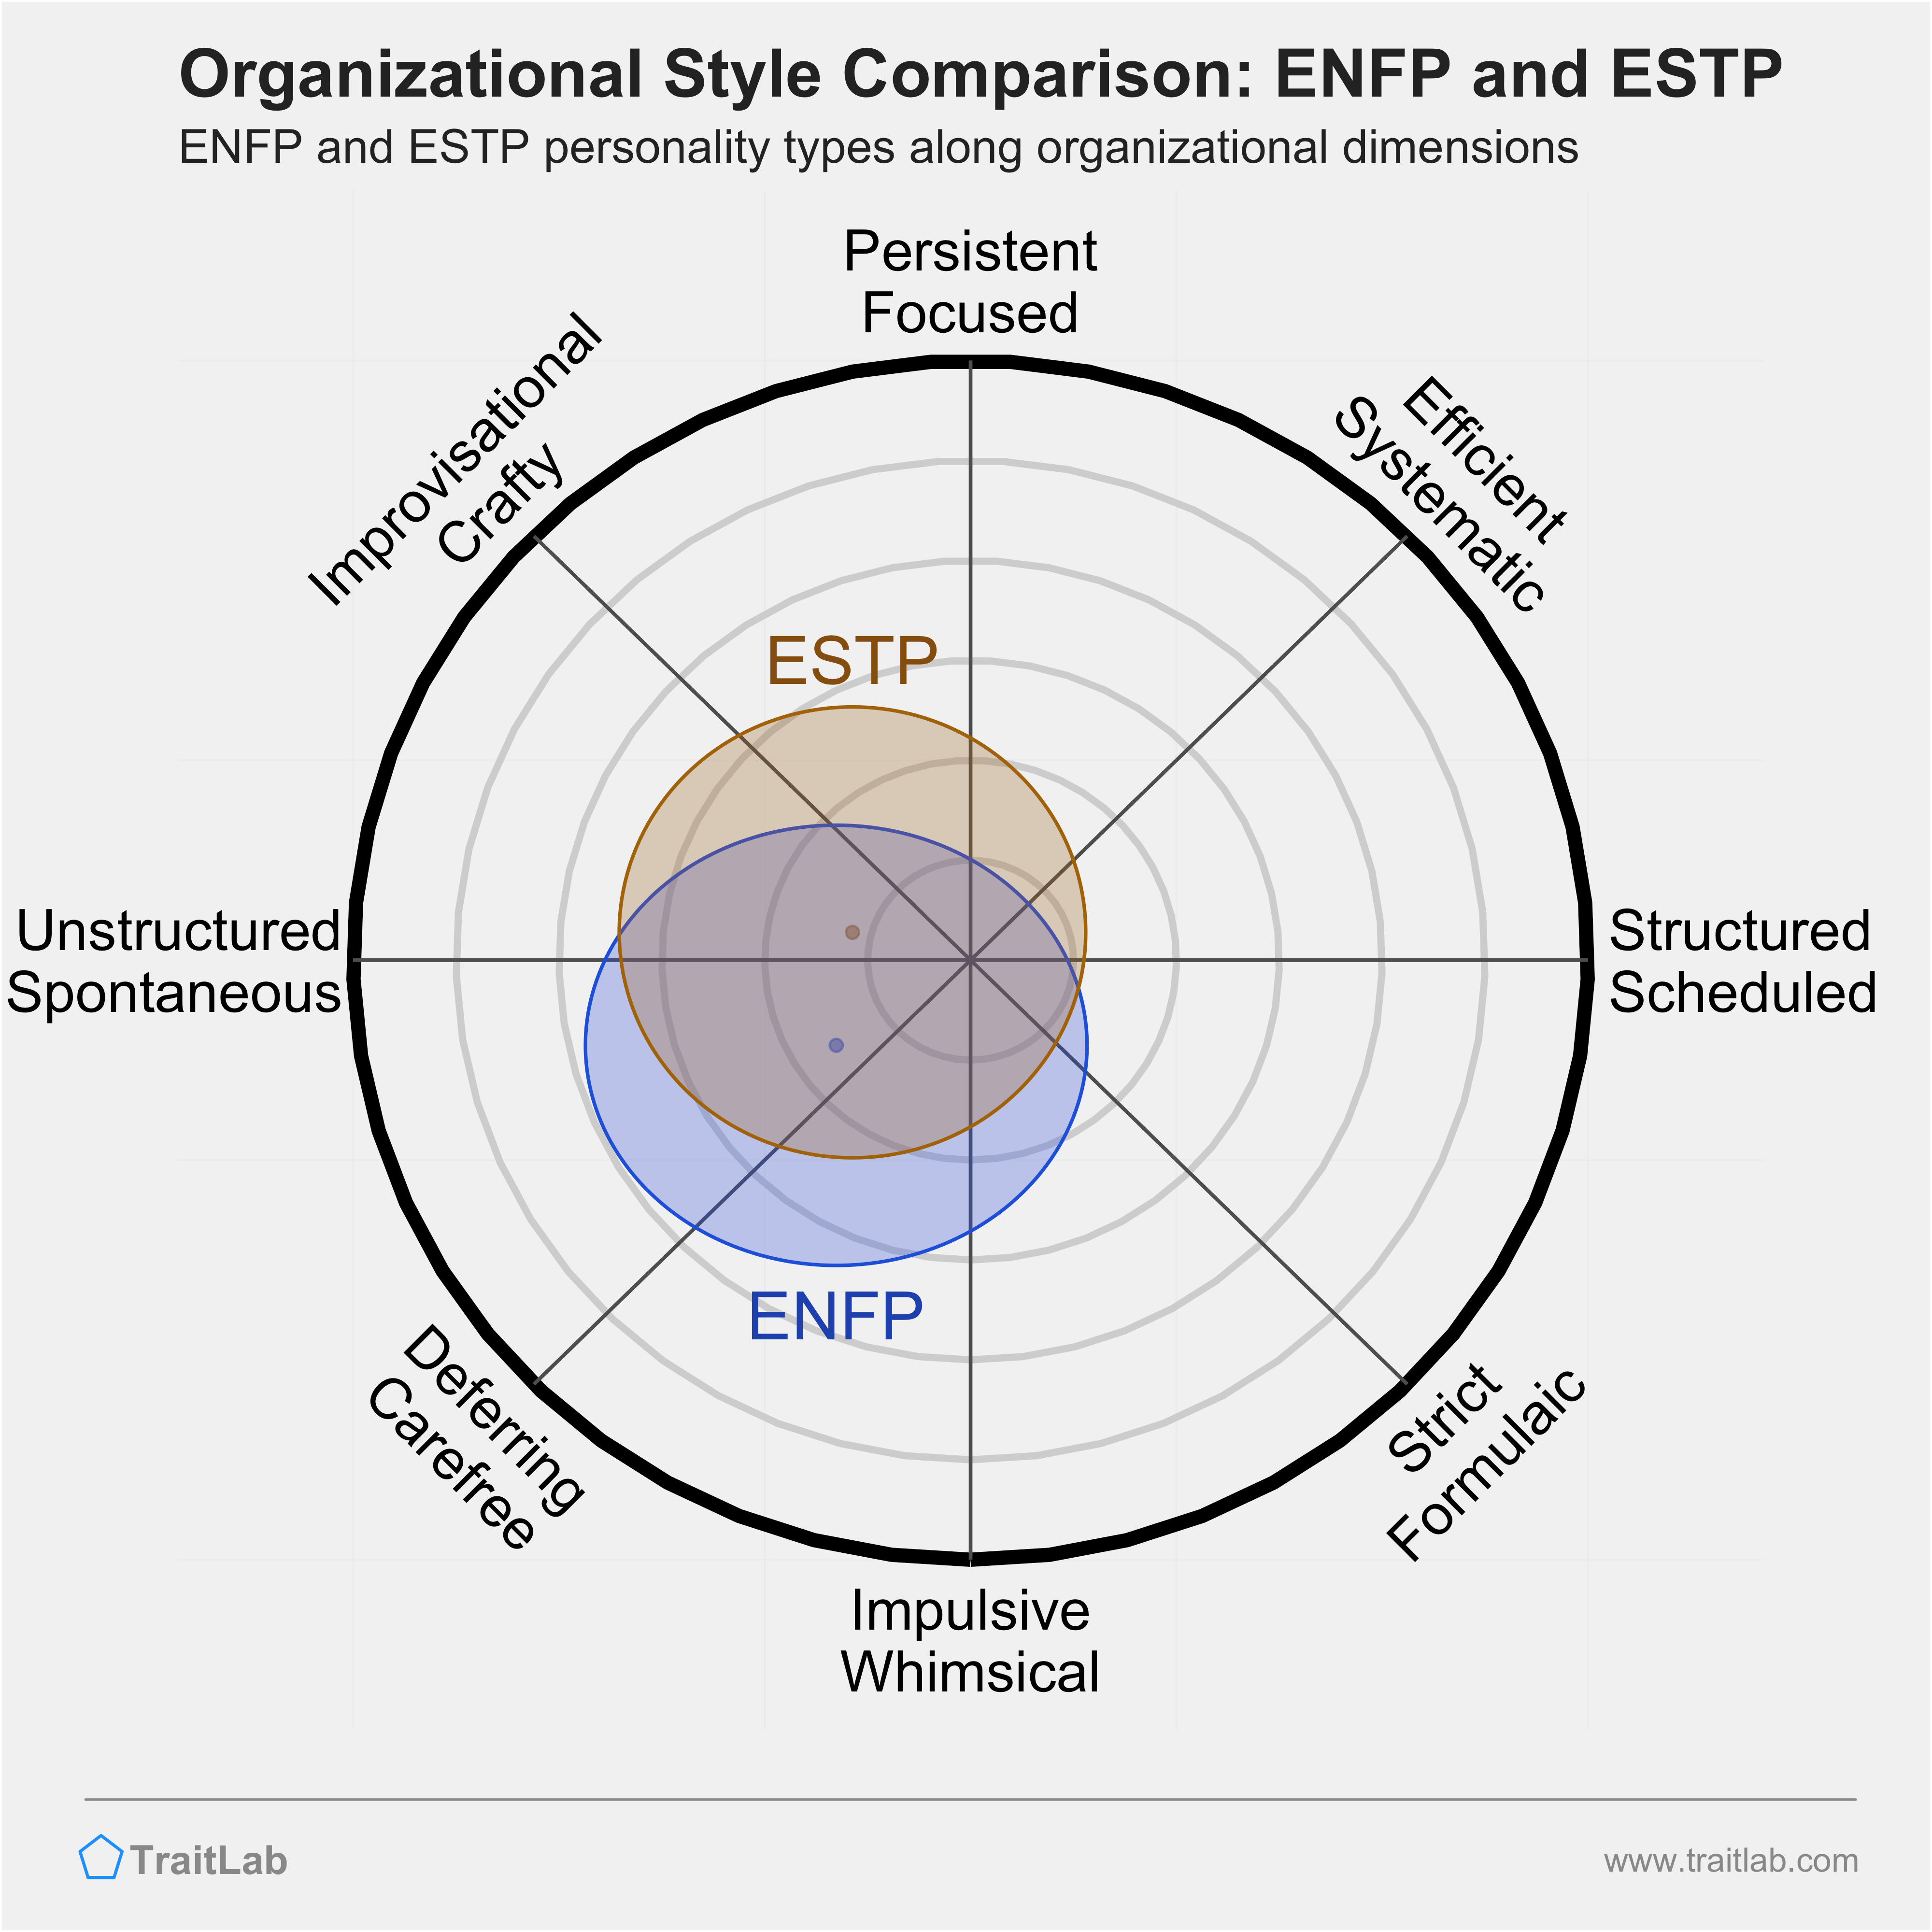 ENFP and ESTP comparison across organizational dimensions